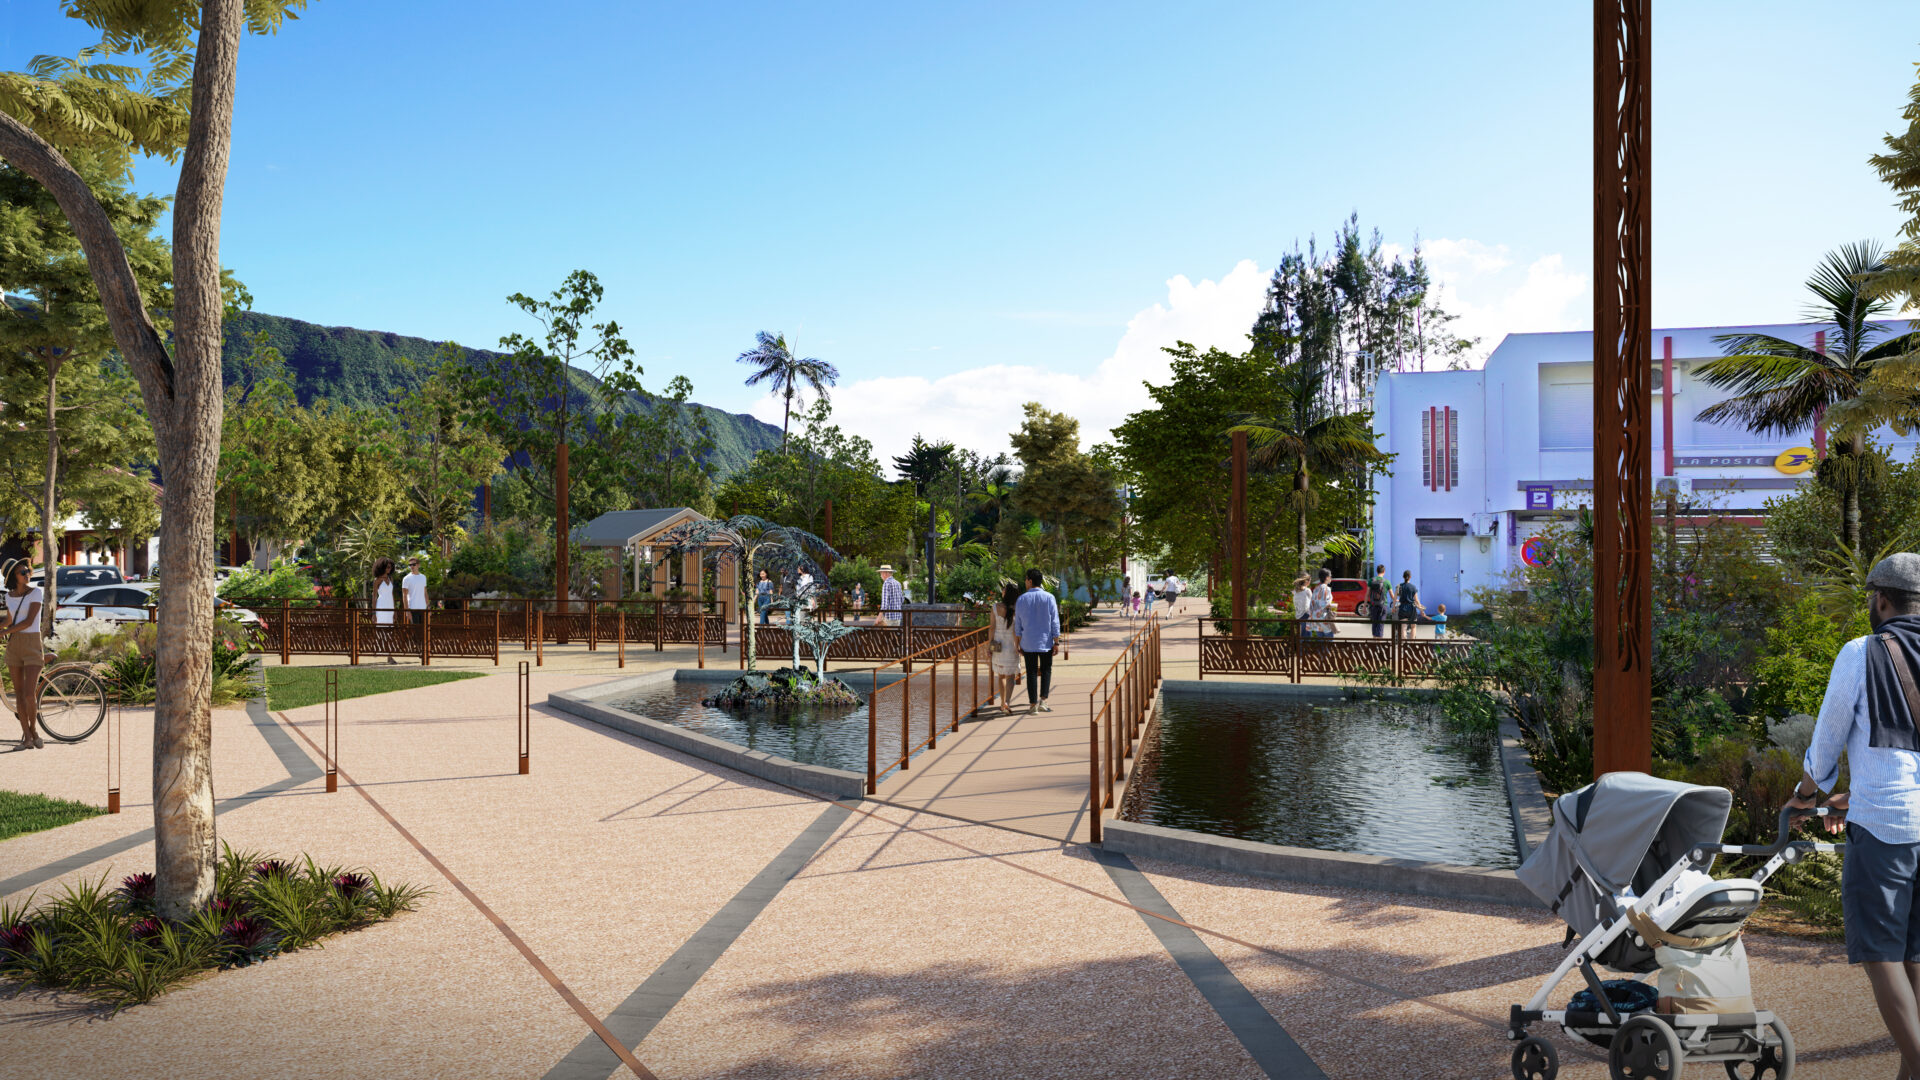 Bientôt un nouveau centre-ville à La Plaine des Palmistes. Voici une présentation en avant première avec notre perspective 3D